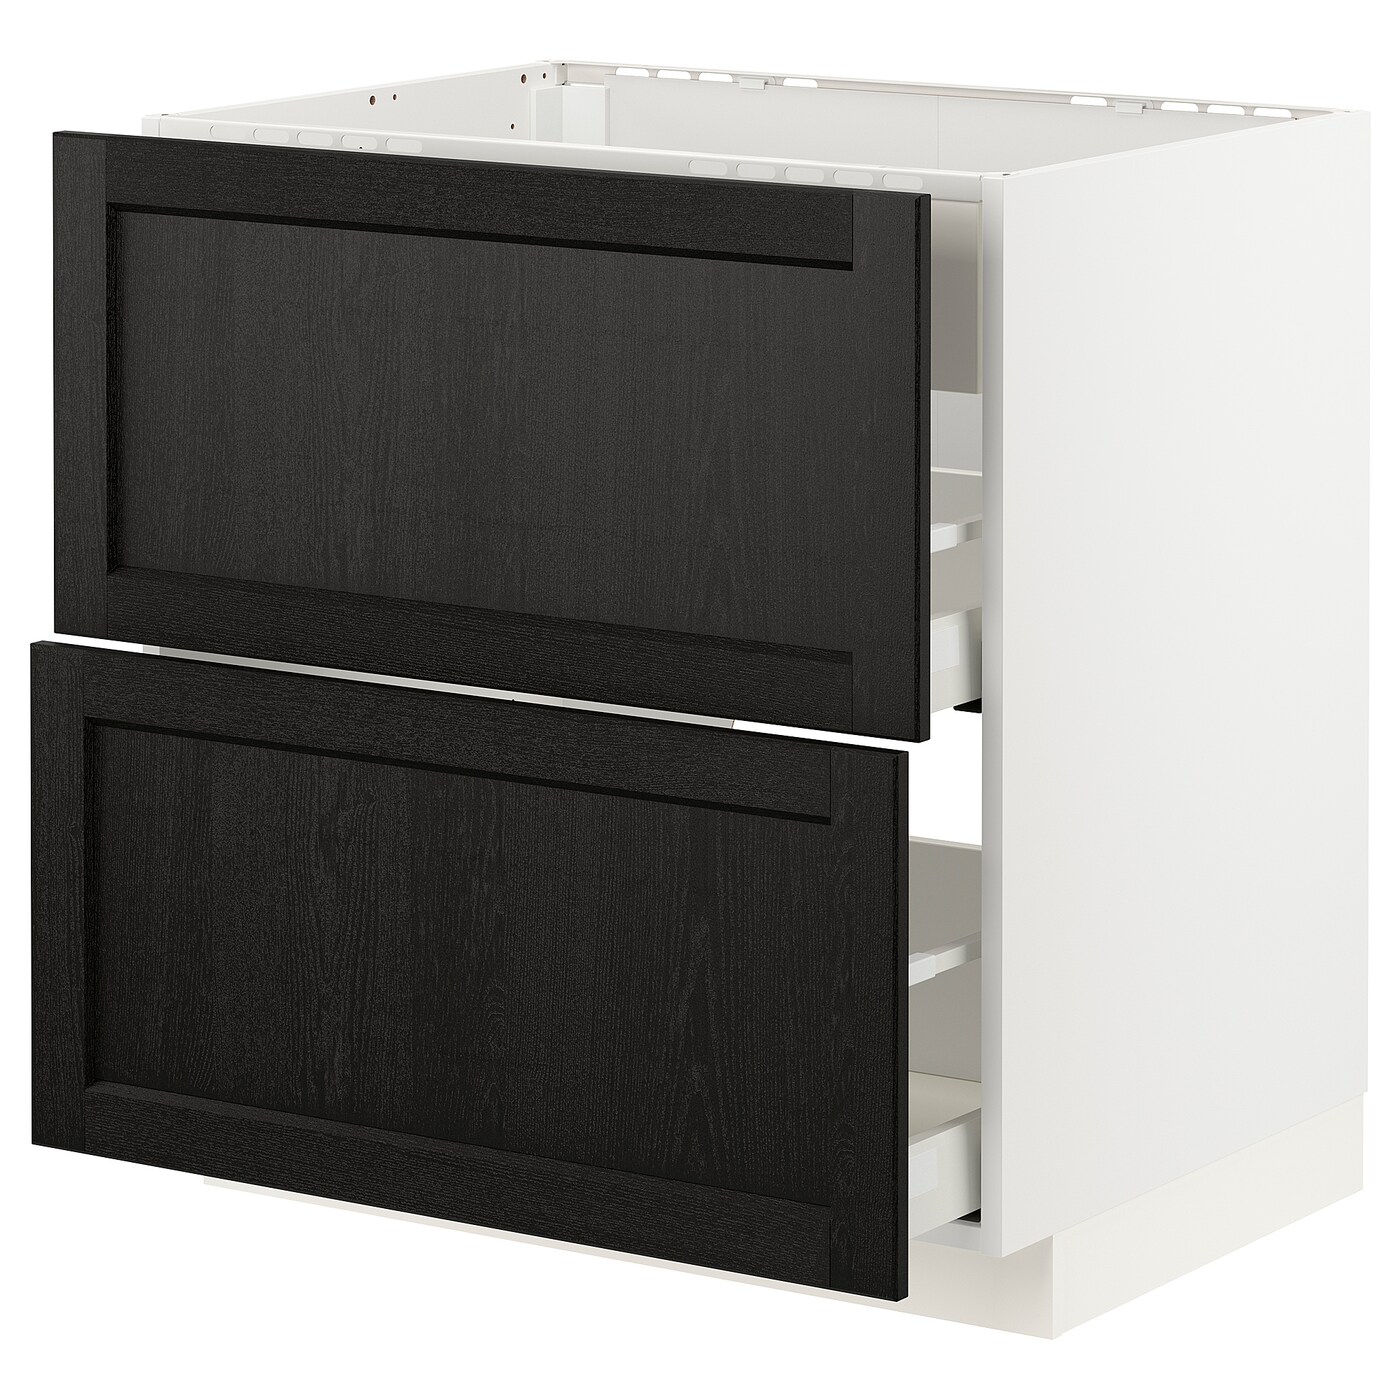 Напольный шкаф - IKEA METOD MAXIMERA, 88x62x80см, белый/черный, МЕТОД МАКСИМЕРА ИКЕА